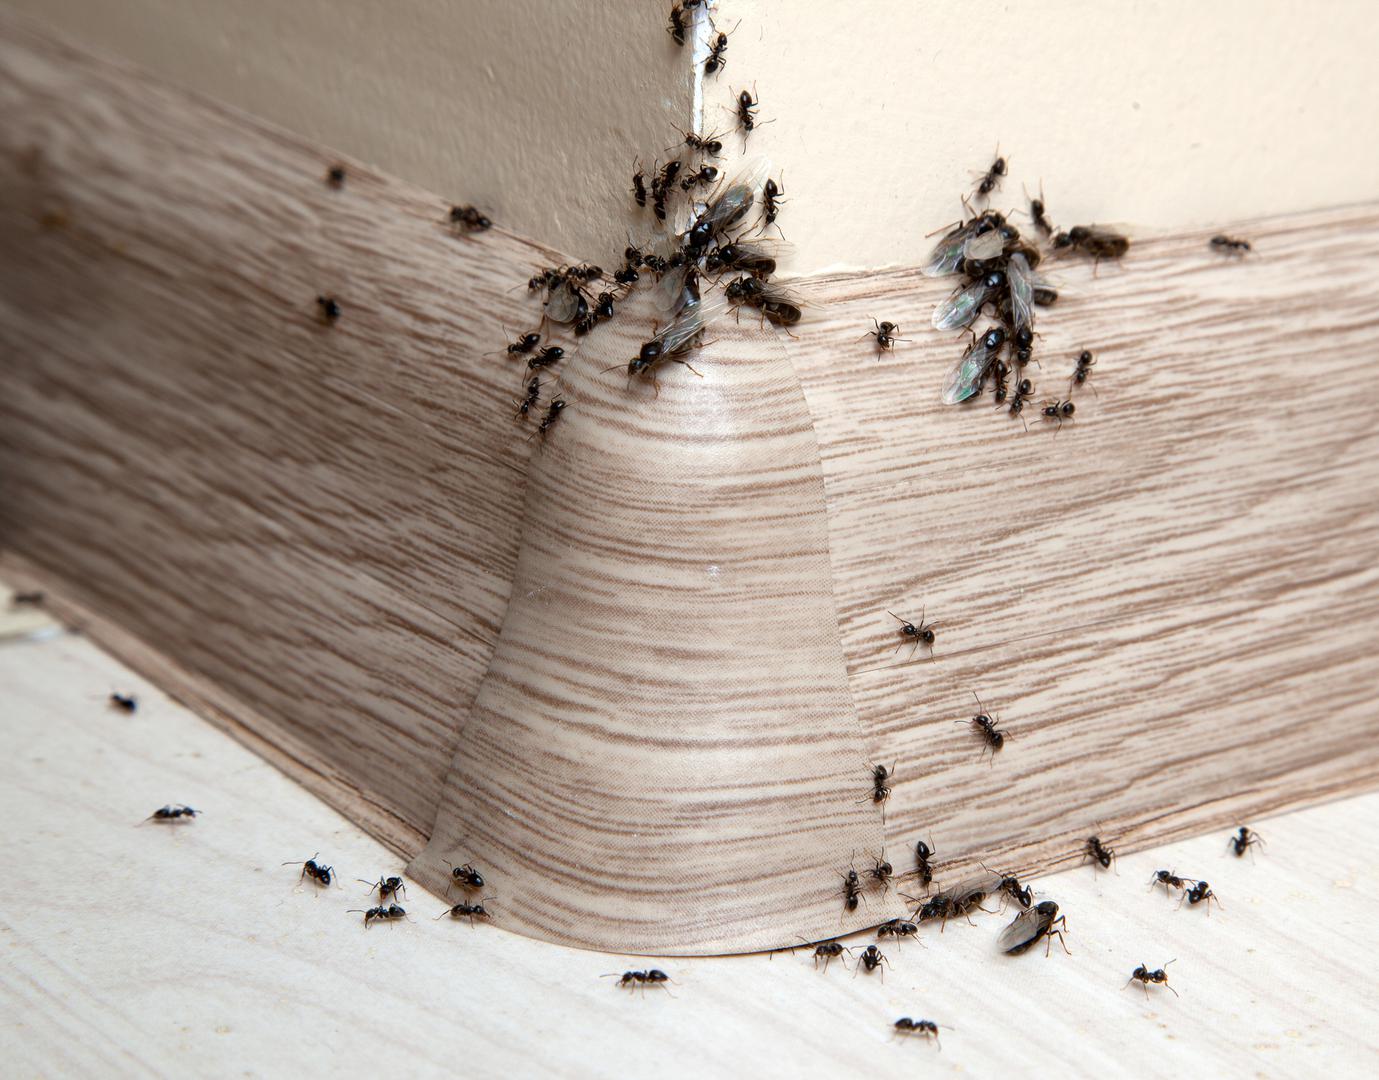 Ako su vam se u dom "naselili" mravi ili žohari, riješit ćete ih se sastojcima koje imate u svom domu. Prisjetili smo se praktičnih savjeta koji će uvijek biti učinkoviti. Evo kako...